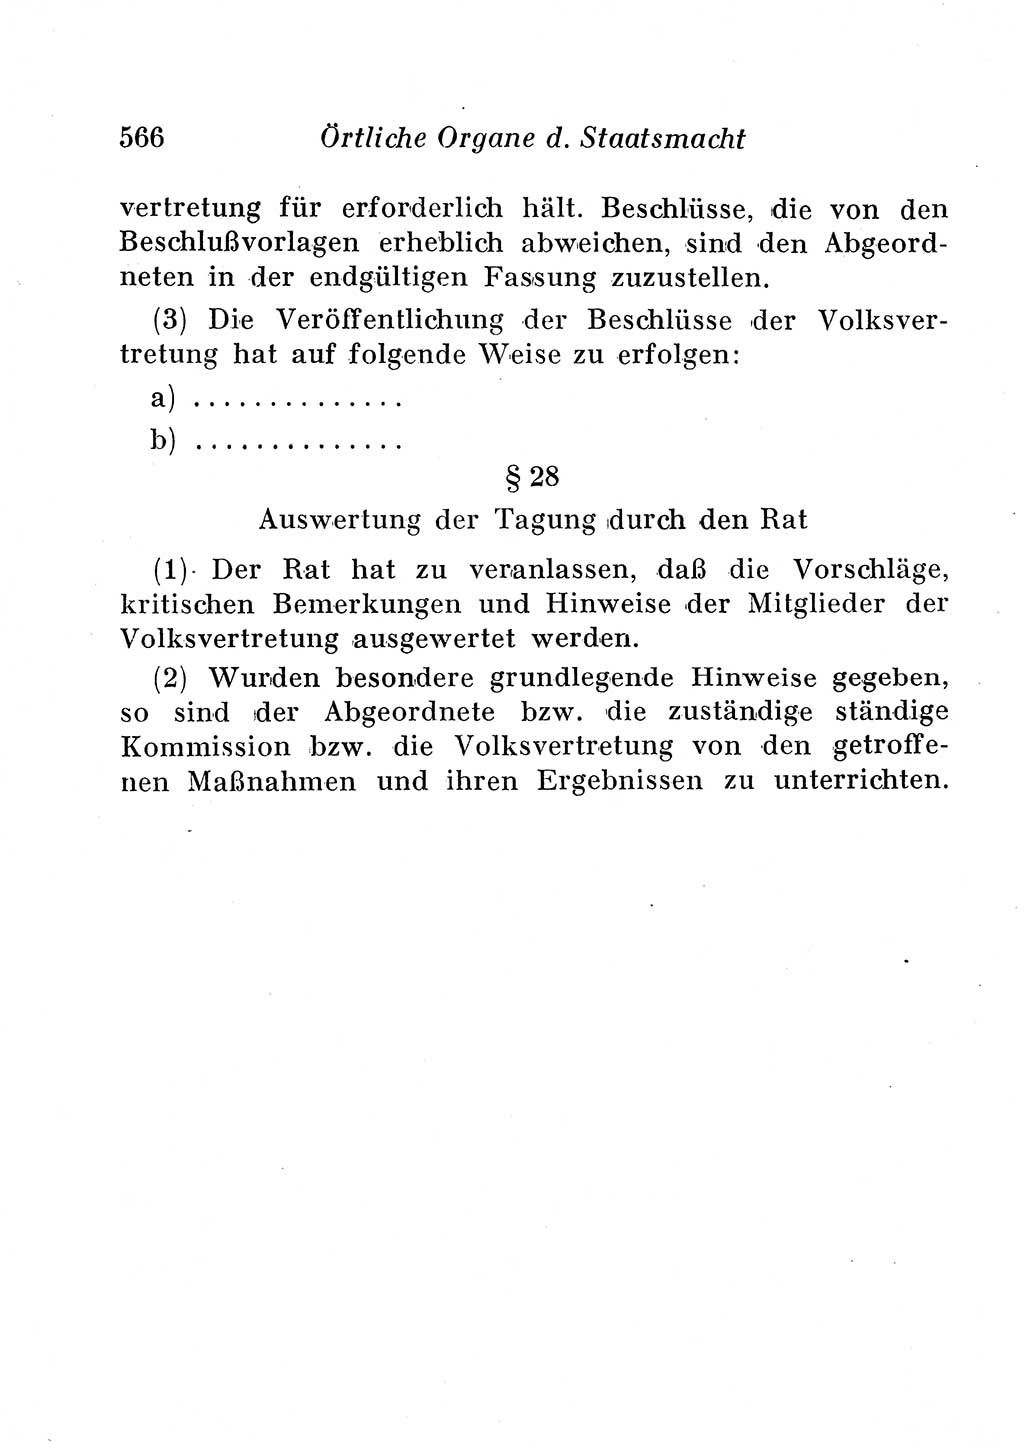 Staats- und verwaltungsrechtliche Gesetze der Deutschen Demokratischen Republik (DDR) 1958, Seite 566 (StVerwR Ges. DDR 1958, S. 566)